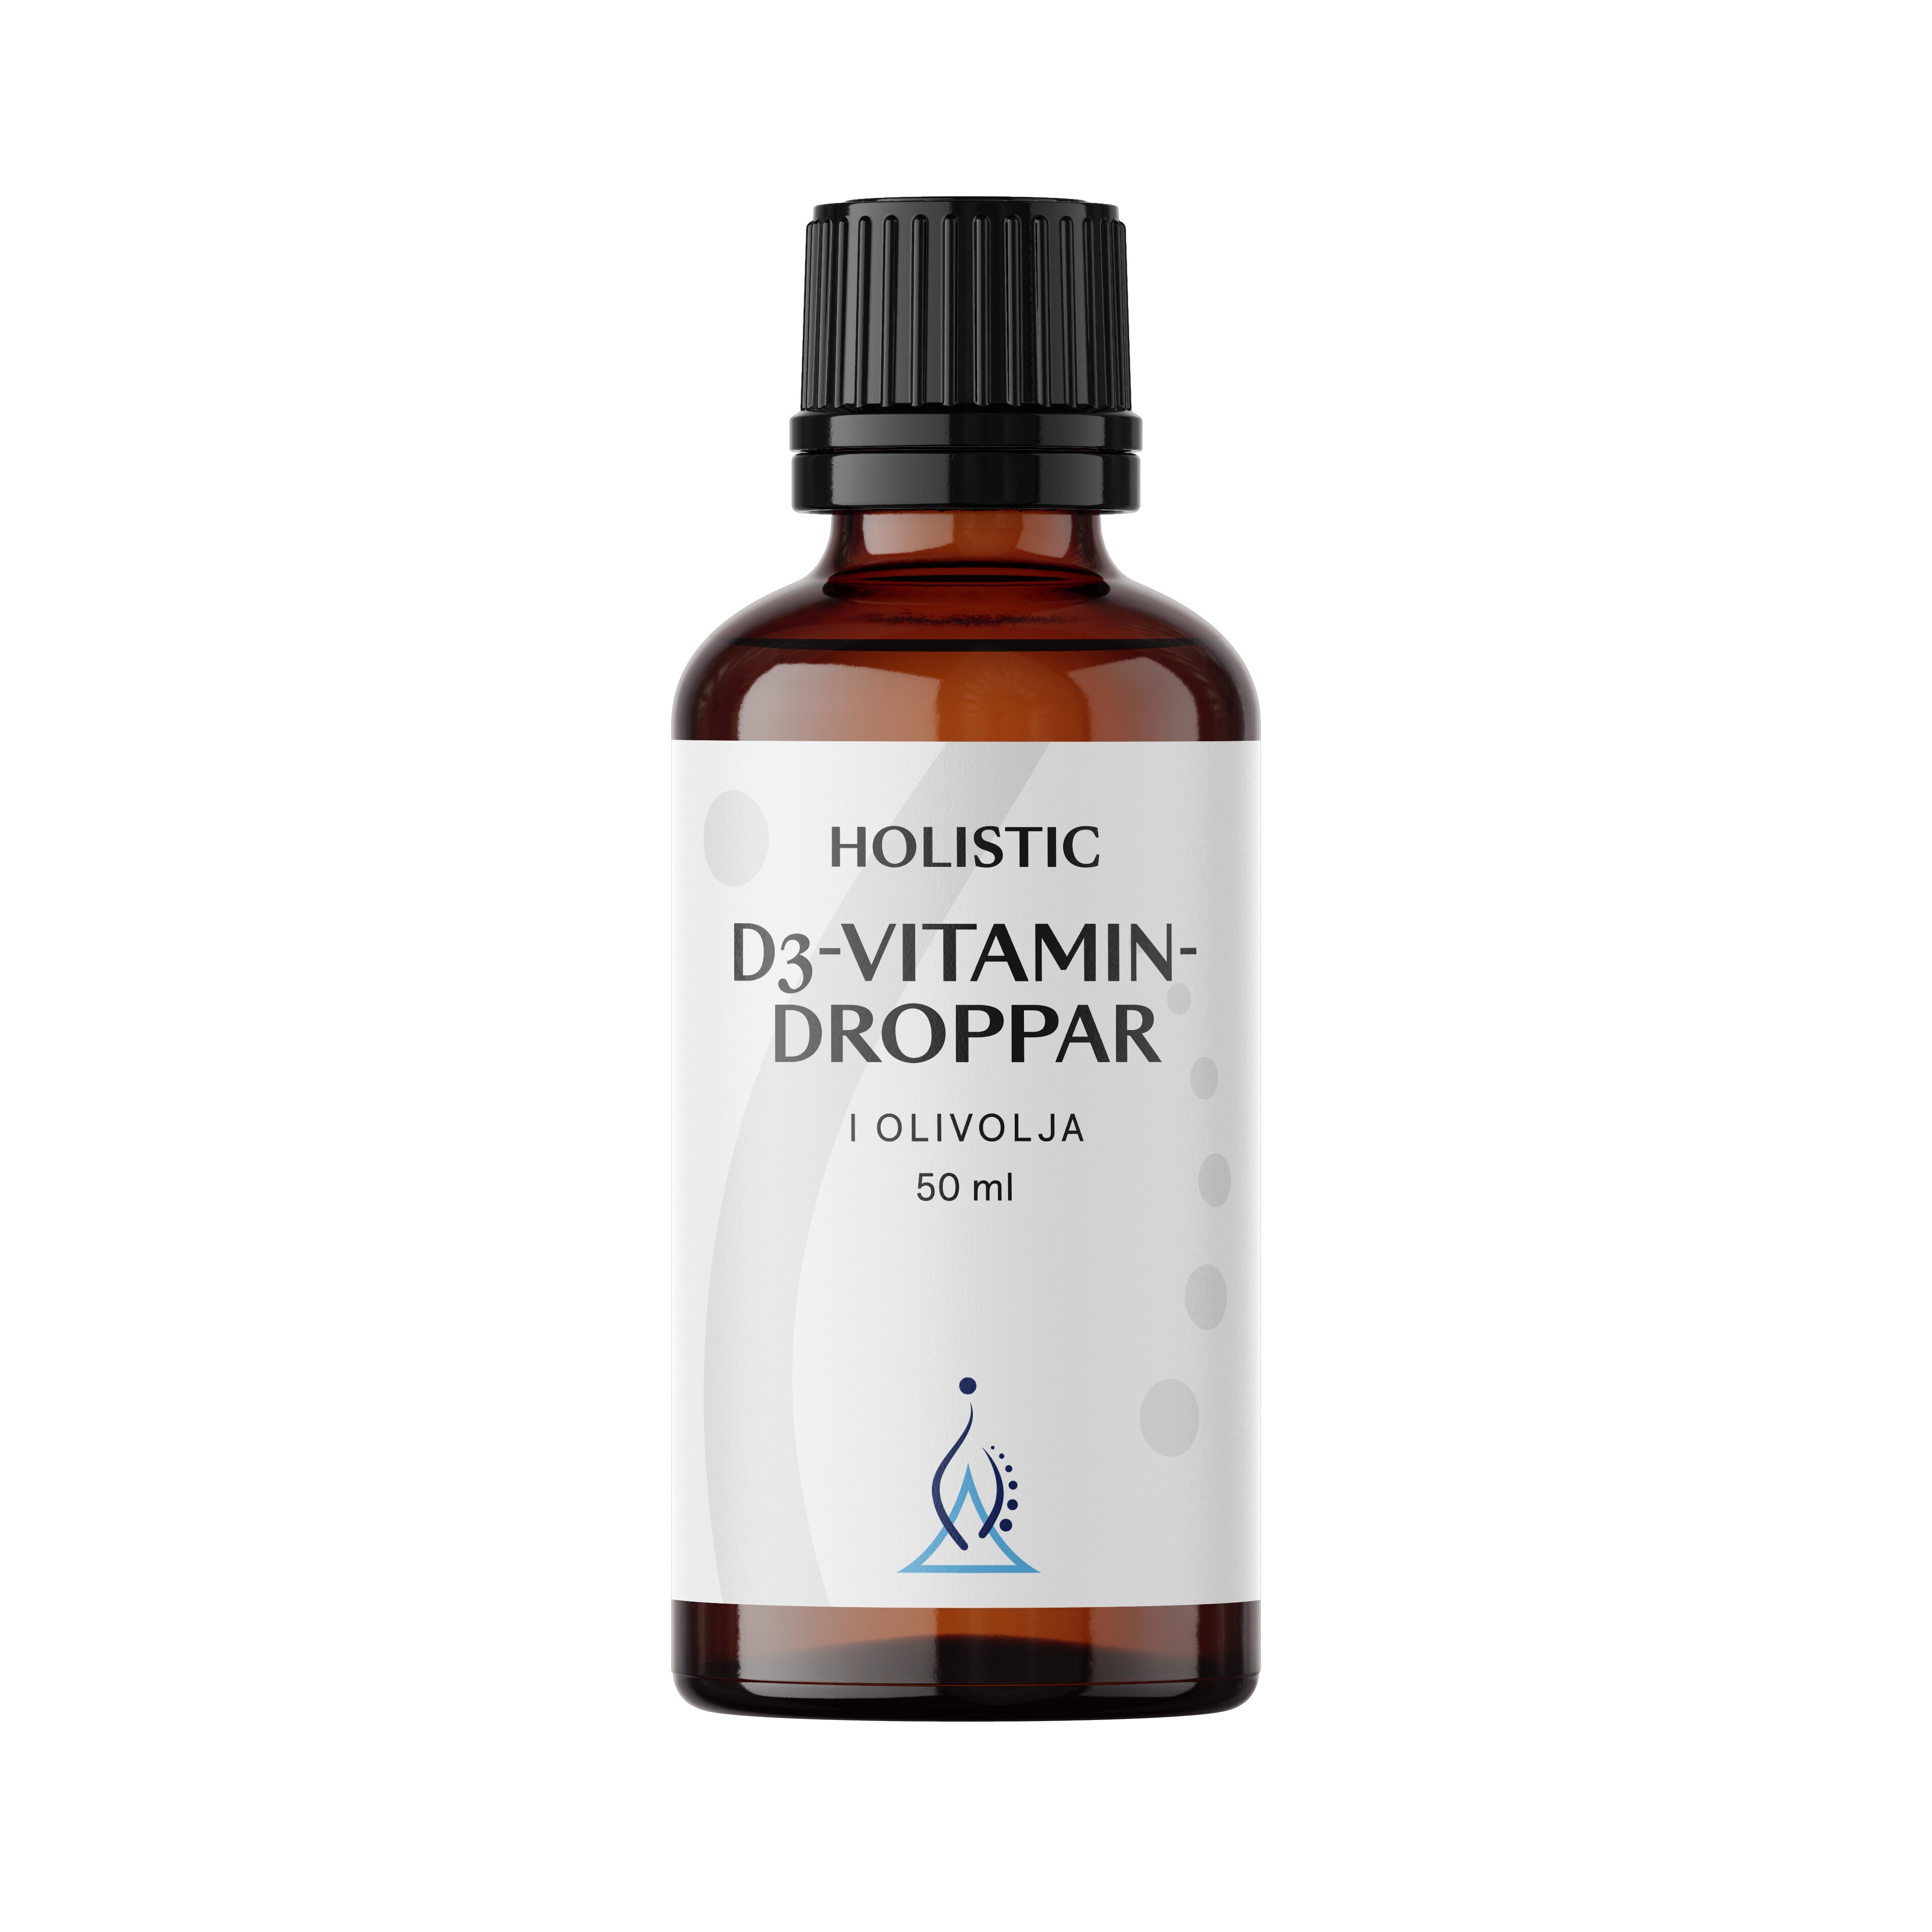 D3-vitamindroppar 50ml